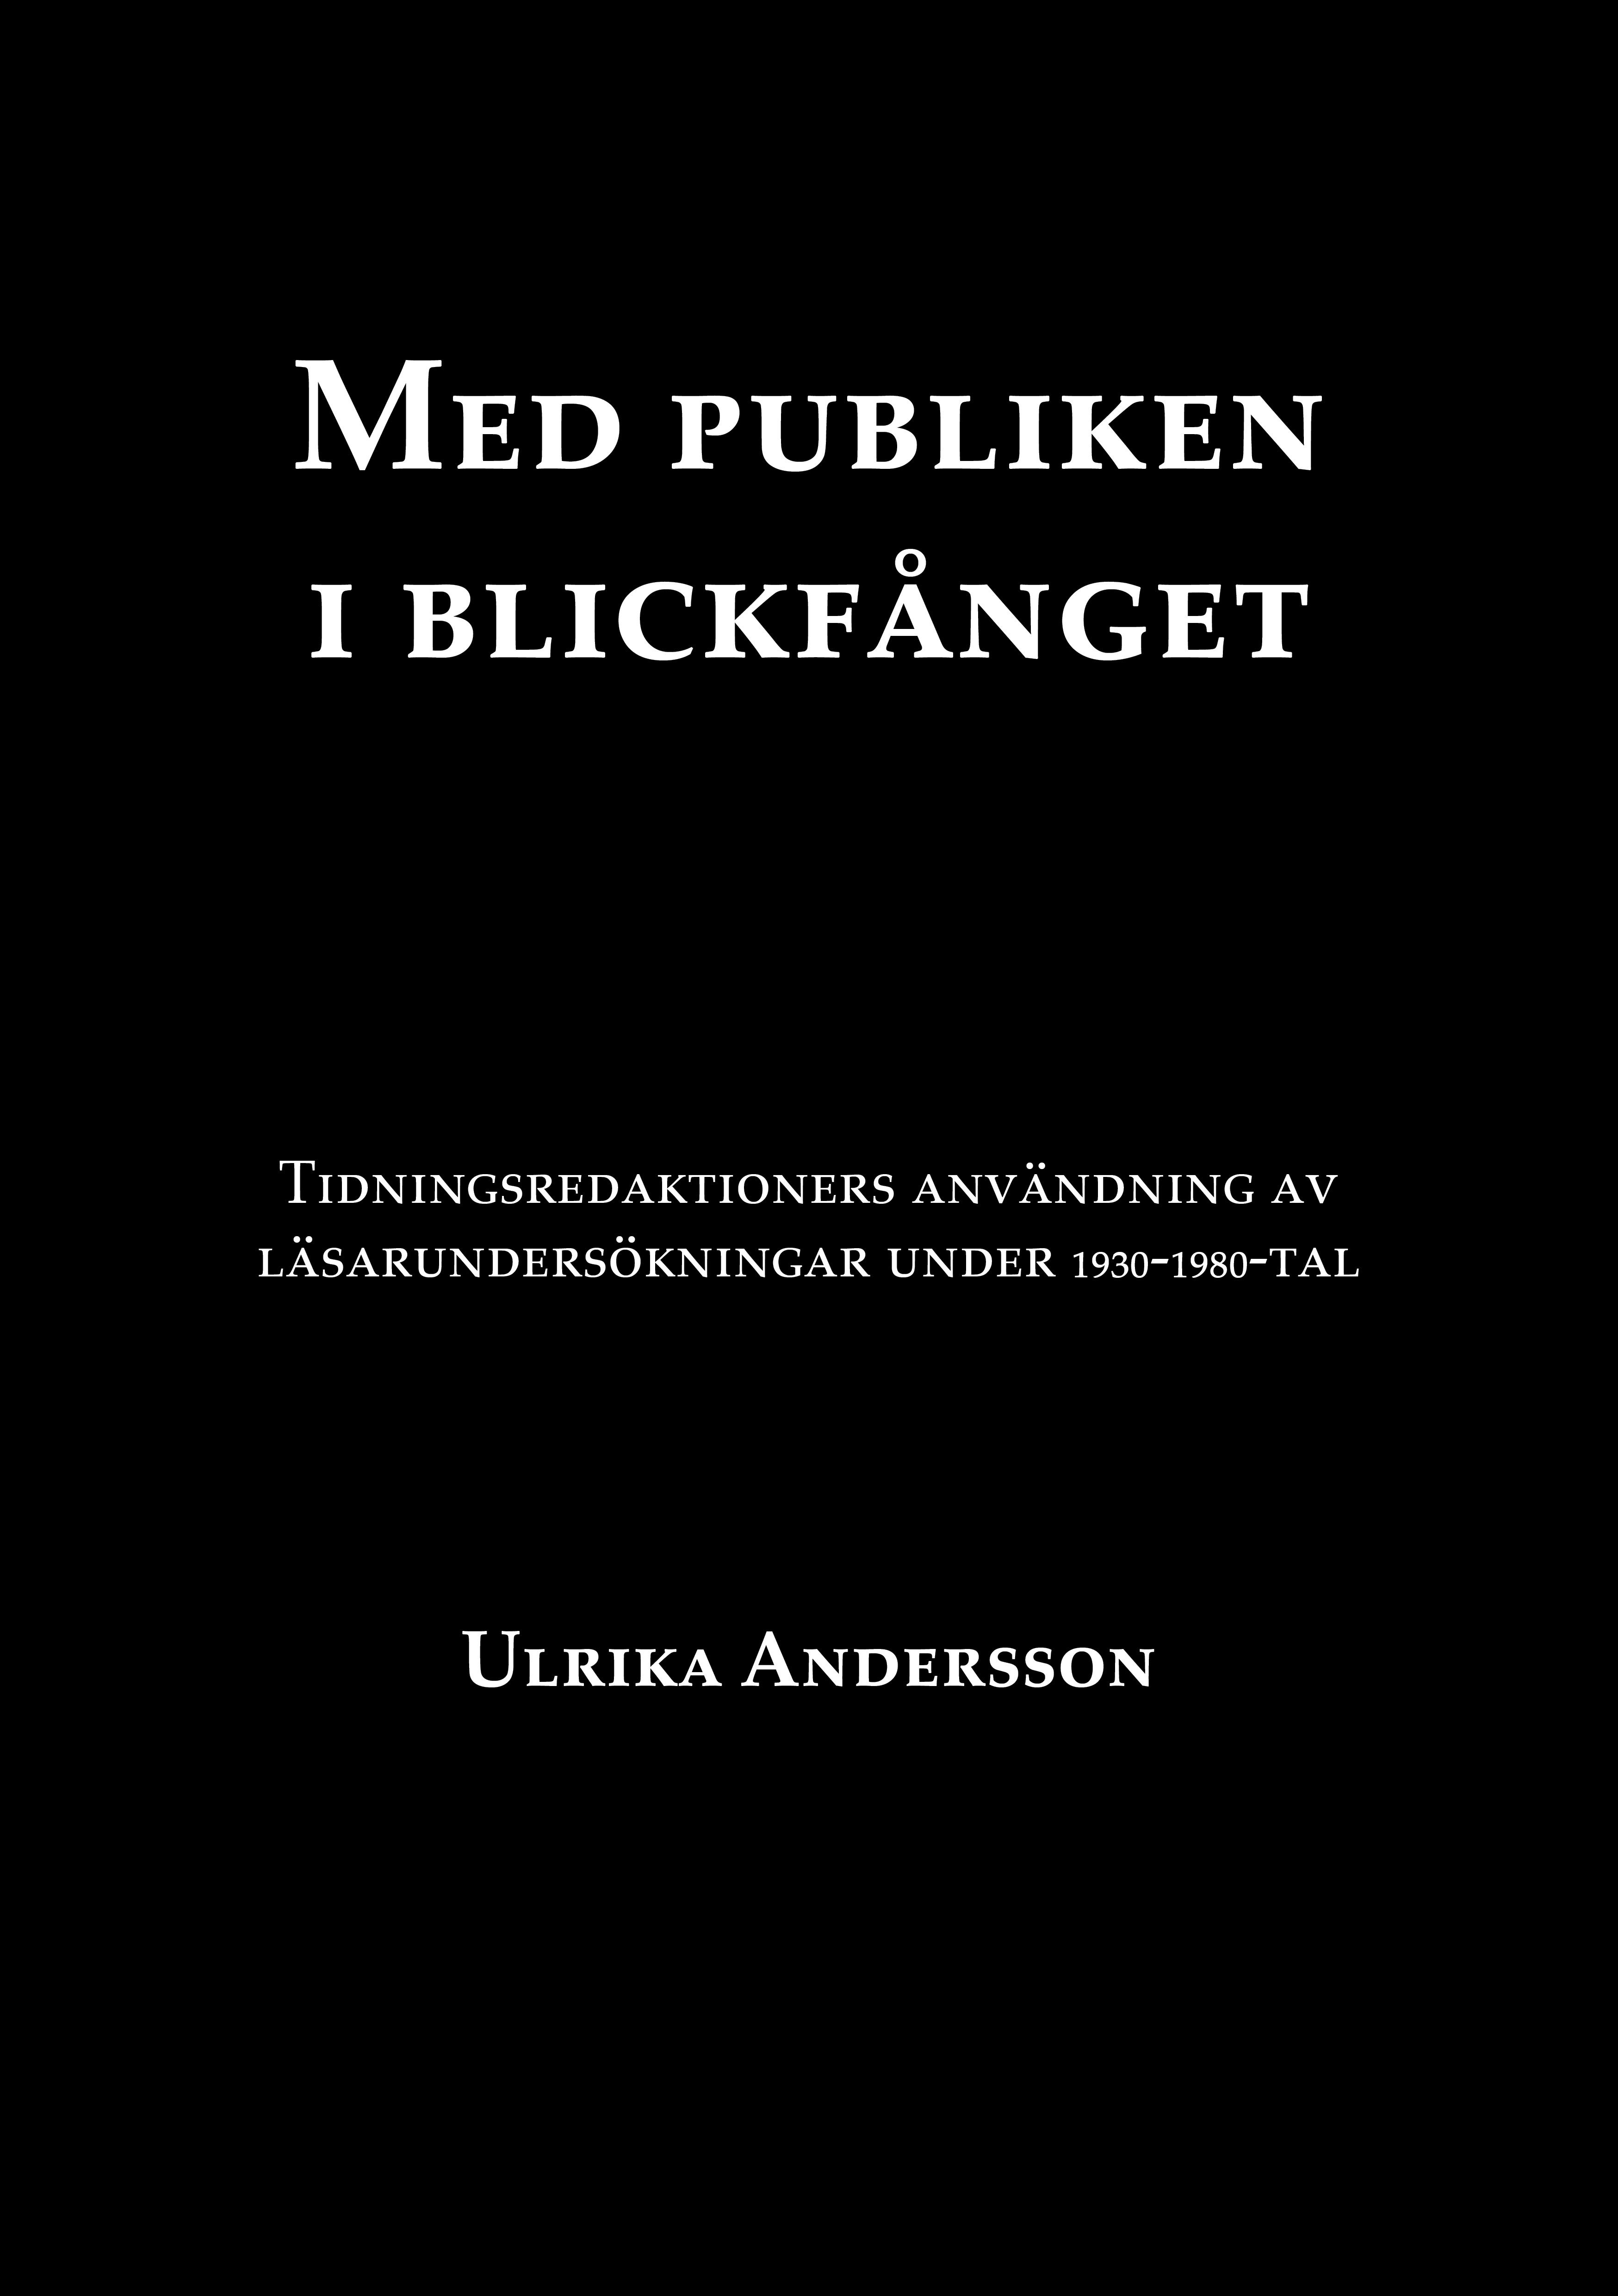 Med publiken i blickfånget, e-bog af Ulrika Andersson